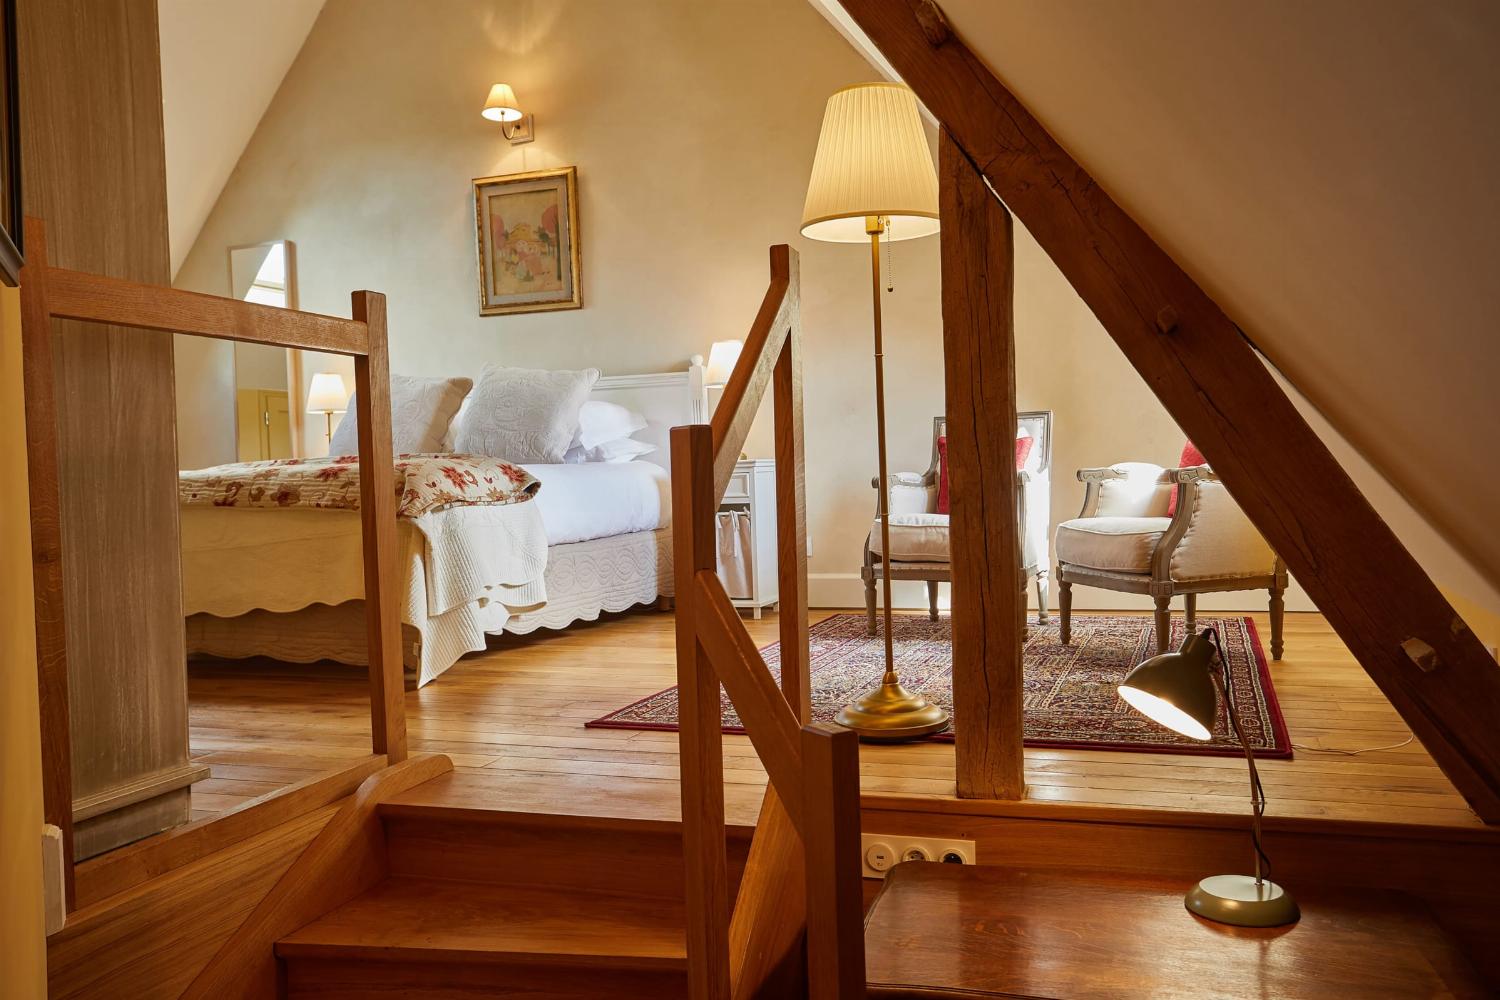 Chambre | Location de vacances en Bourgogne